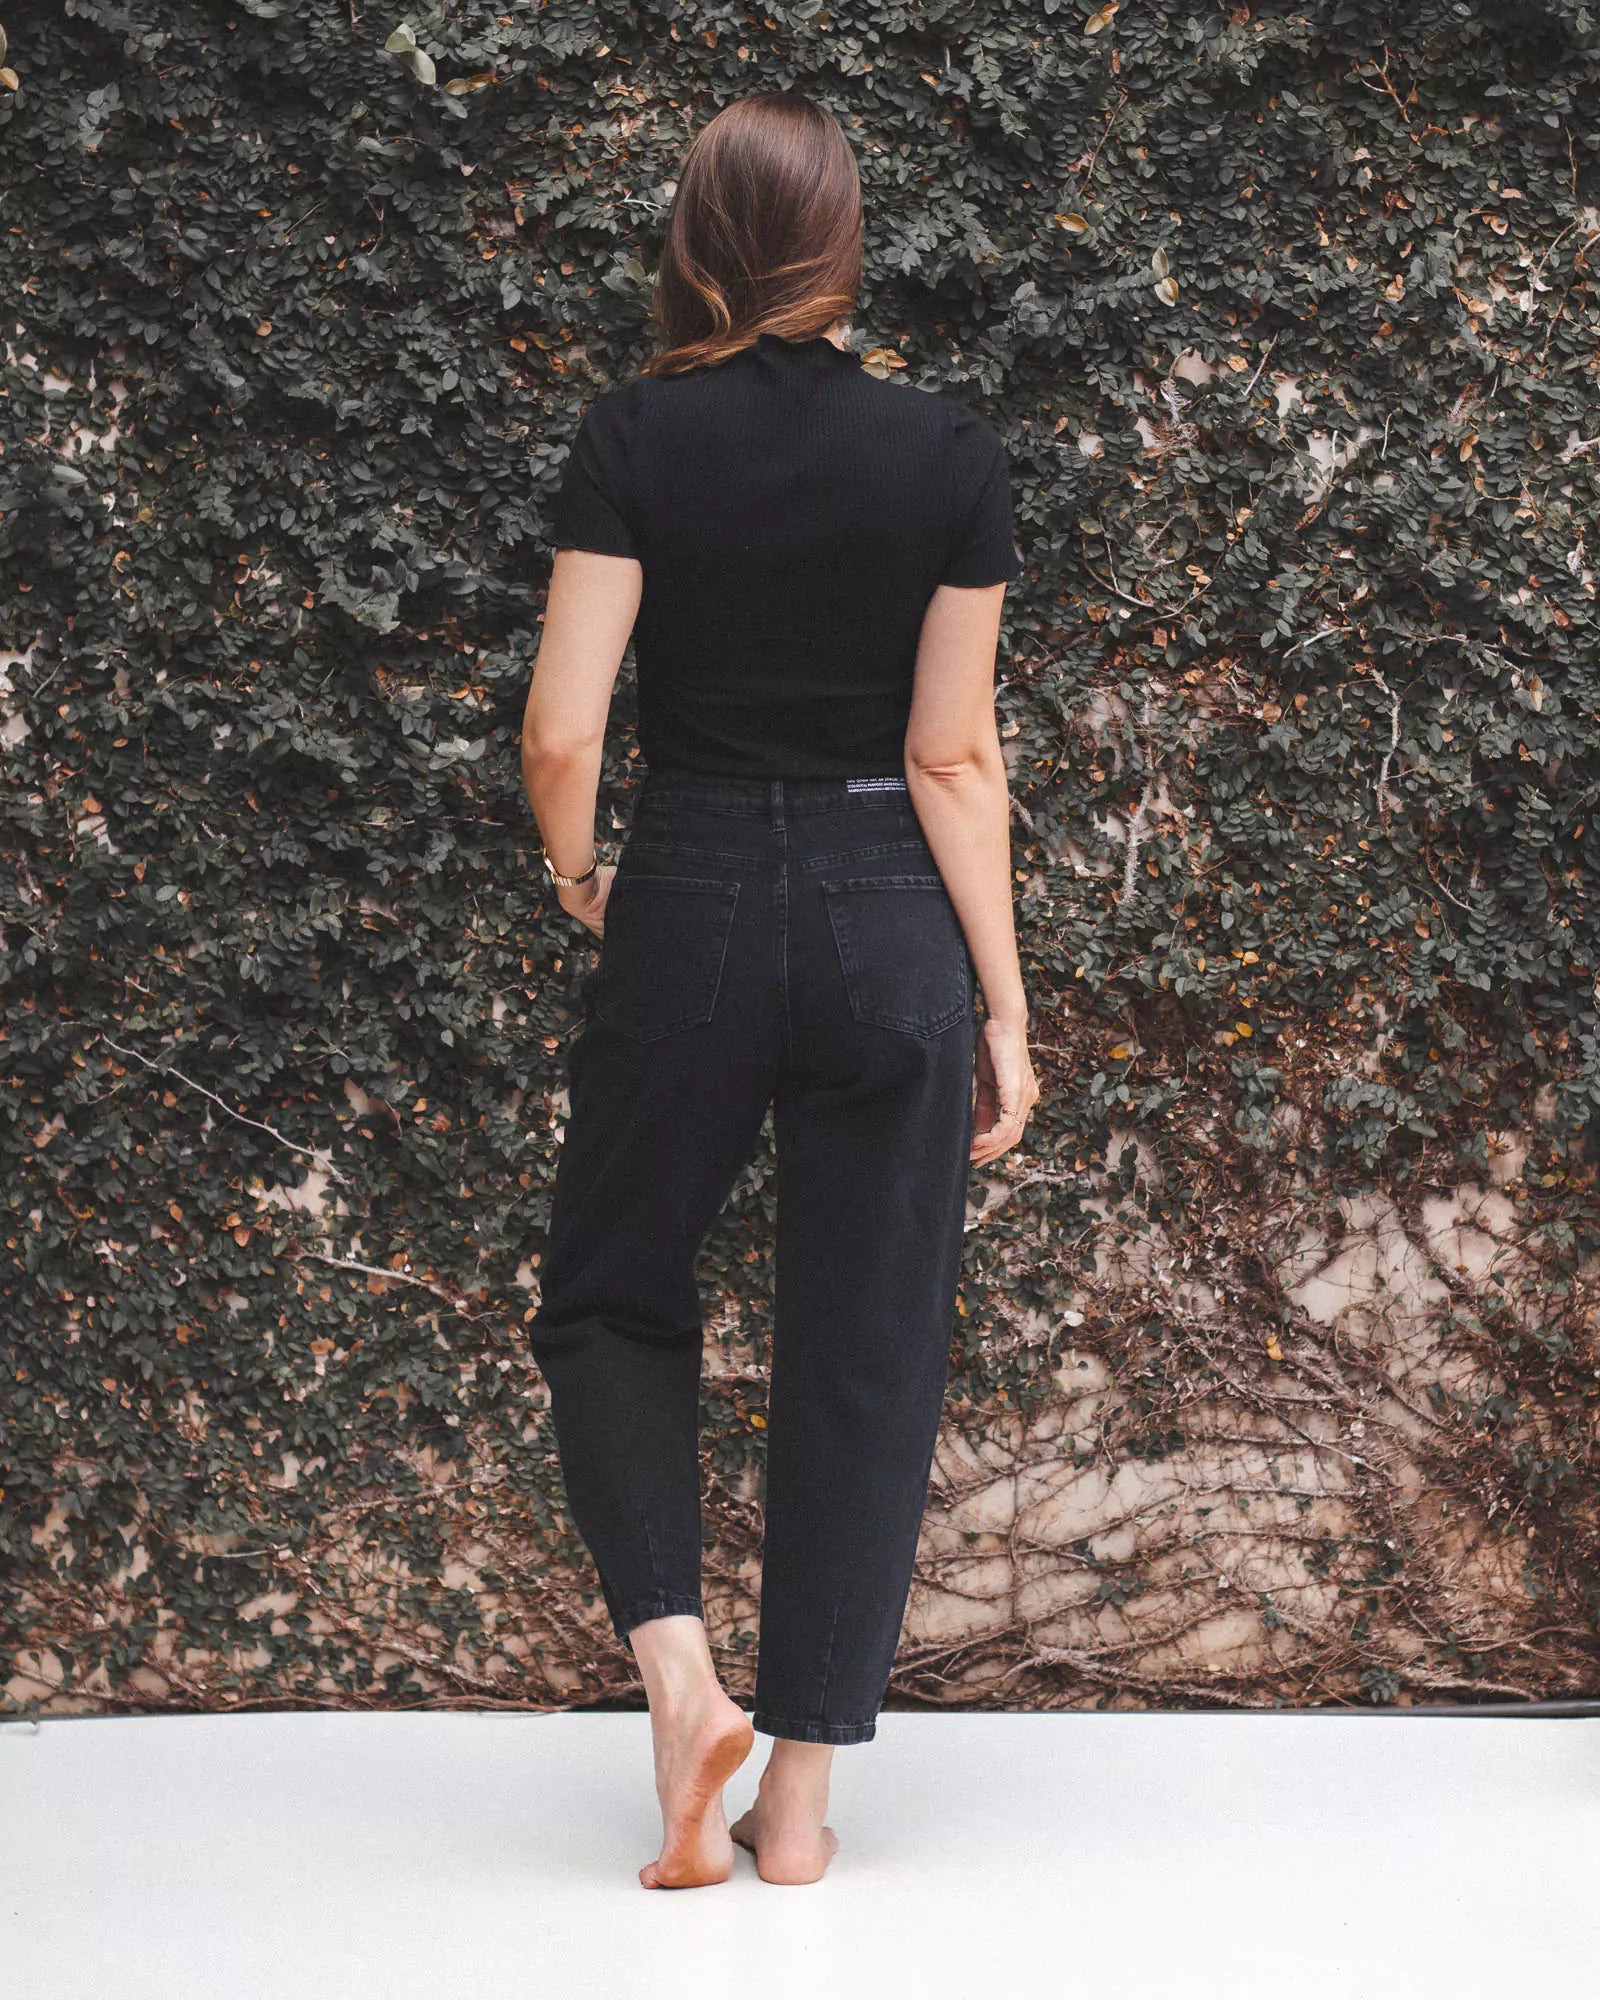 Calça Jeans Slouchy Preto Eco Denim™. Compre online moda sustentável e atemporal na Minimadeia. Roupas femininas estilosas, básicas e sustentáveis. Foto produto 05